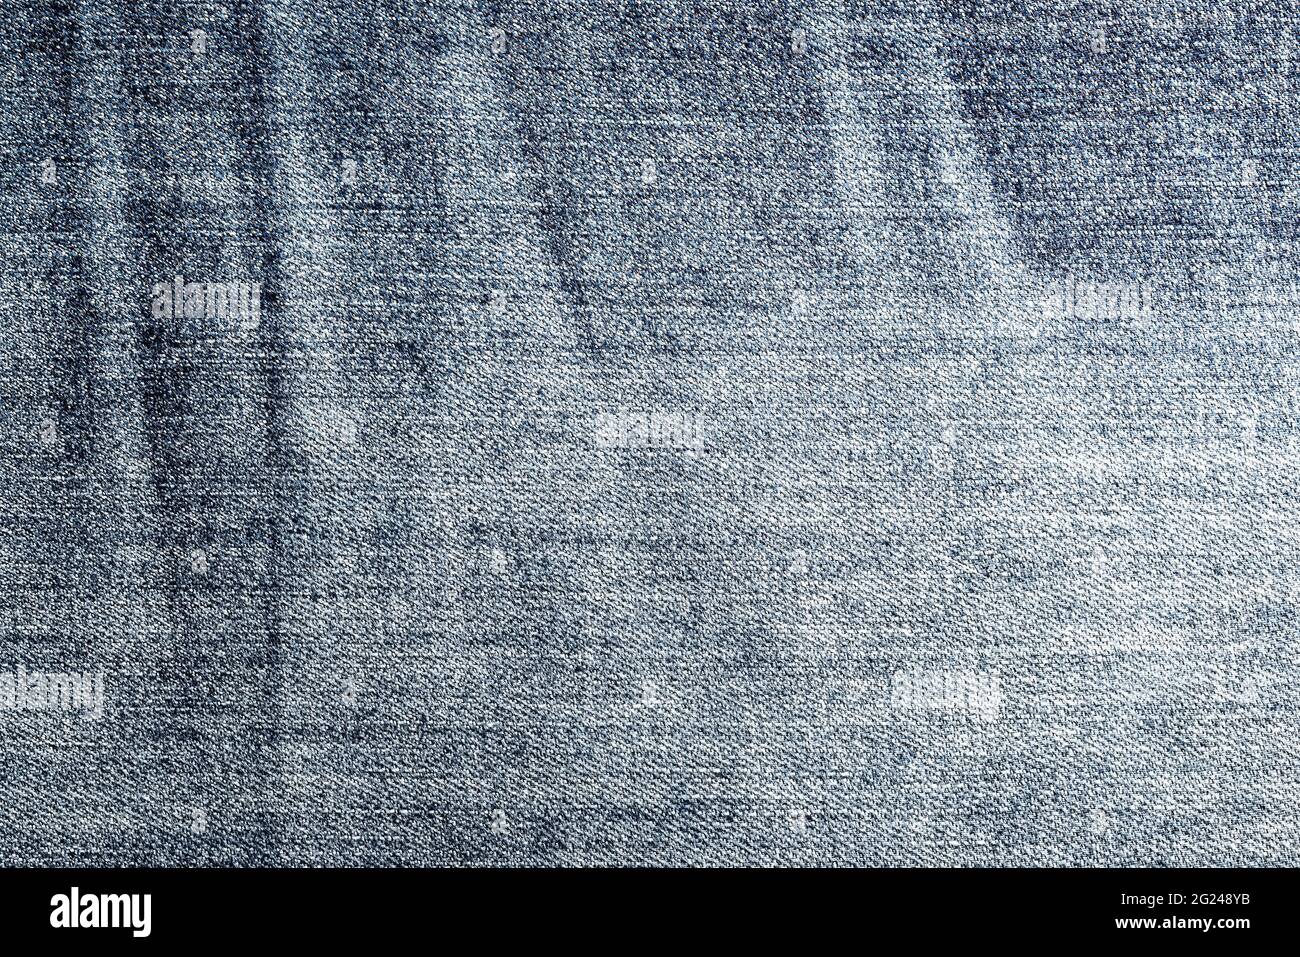 vue rapprochée du tissu denim bleu usé, fond plein cadre Banque D'Images